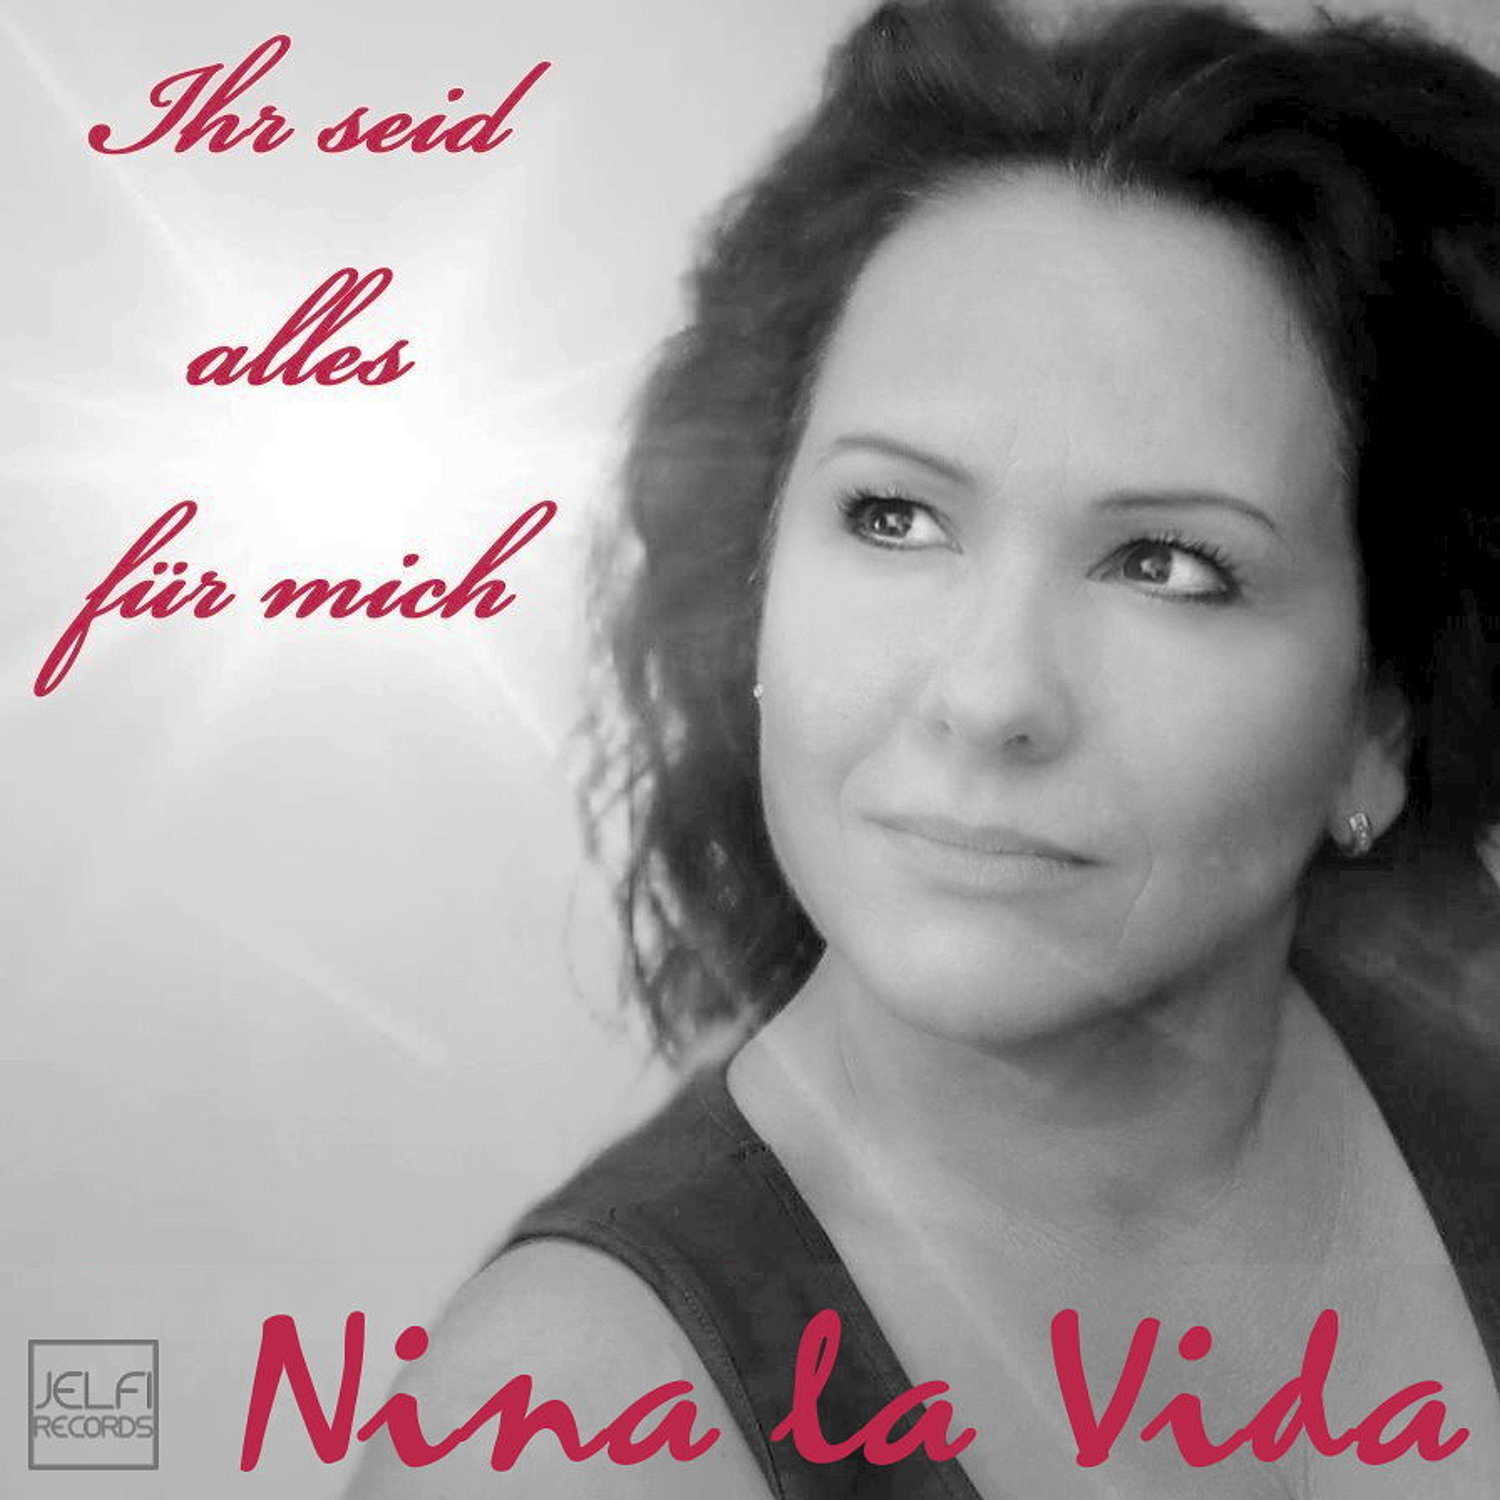 Nina La Vida - Ihr seid alles fr mich Cover.jpg